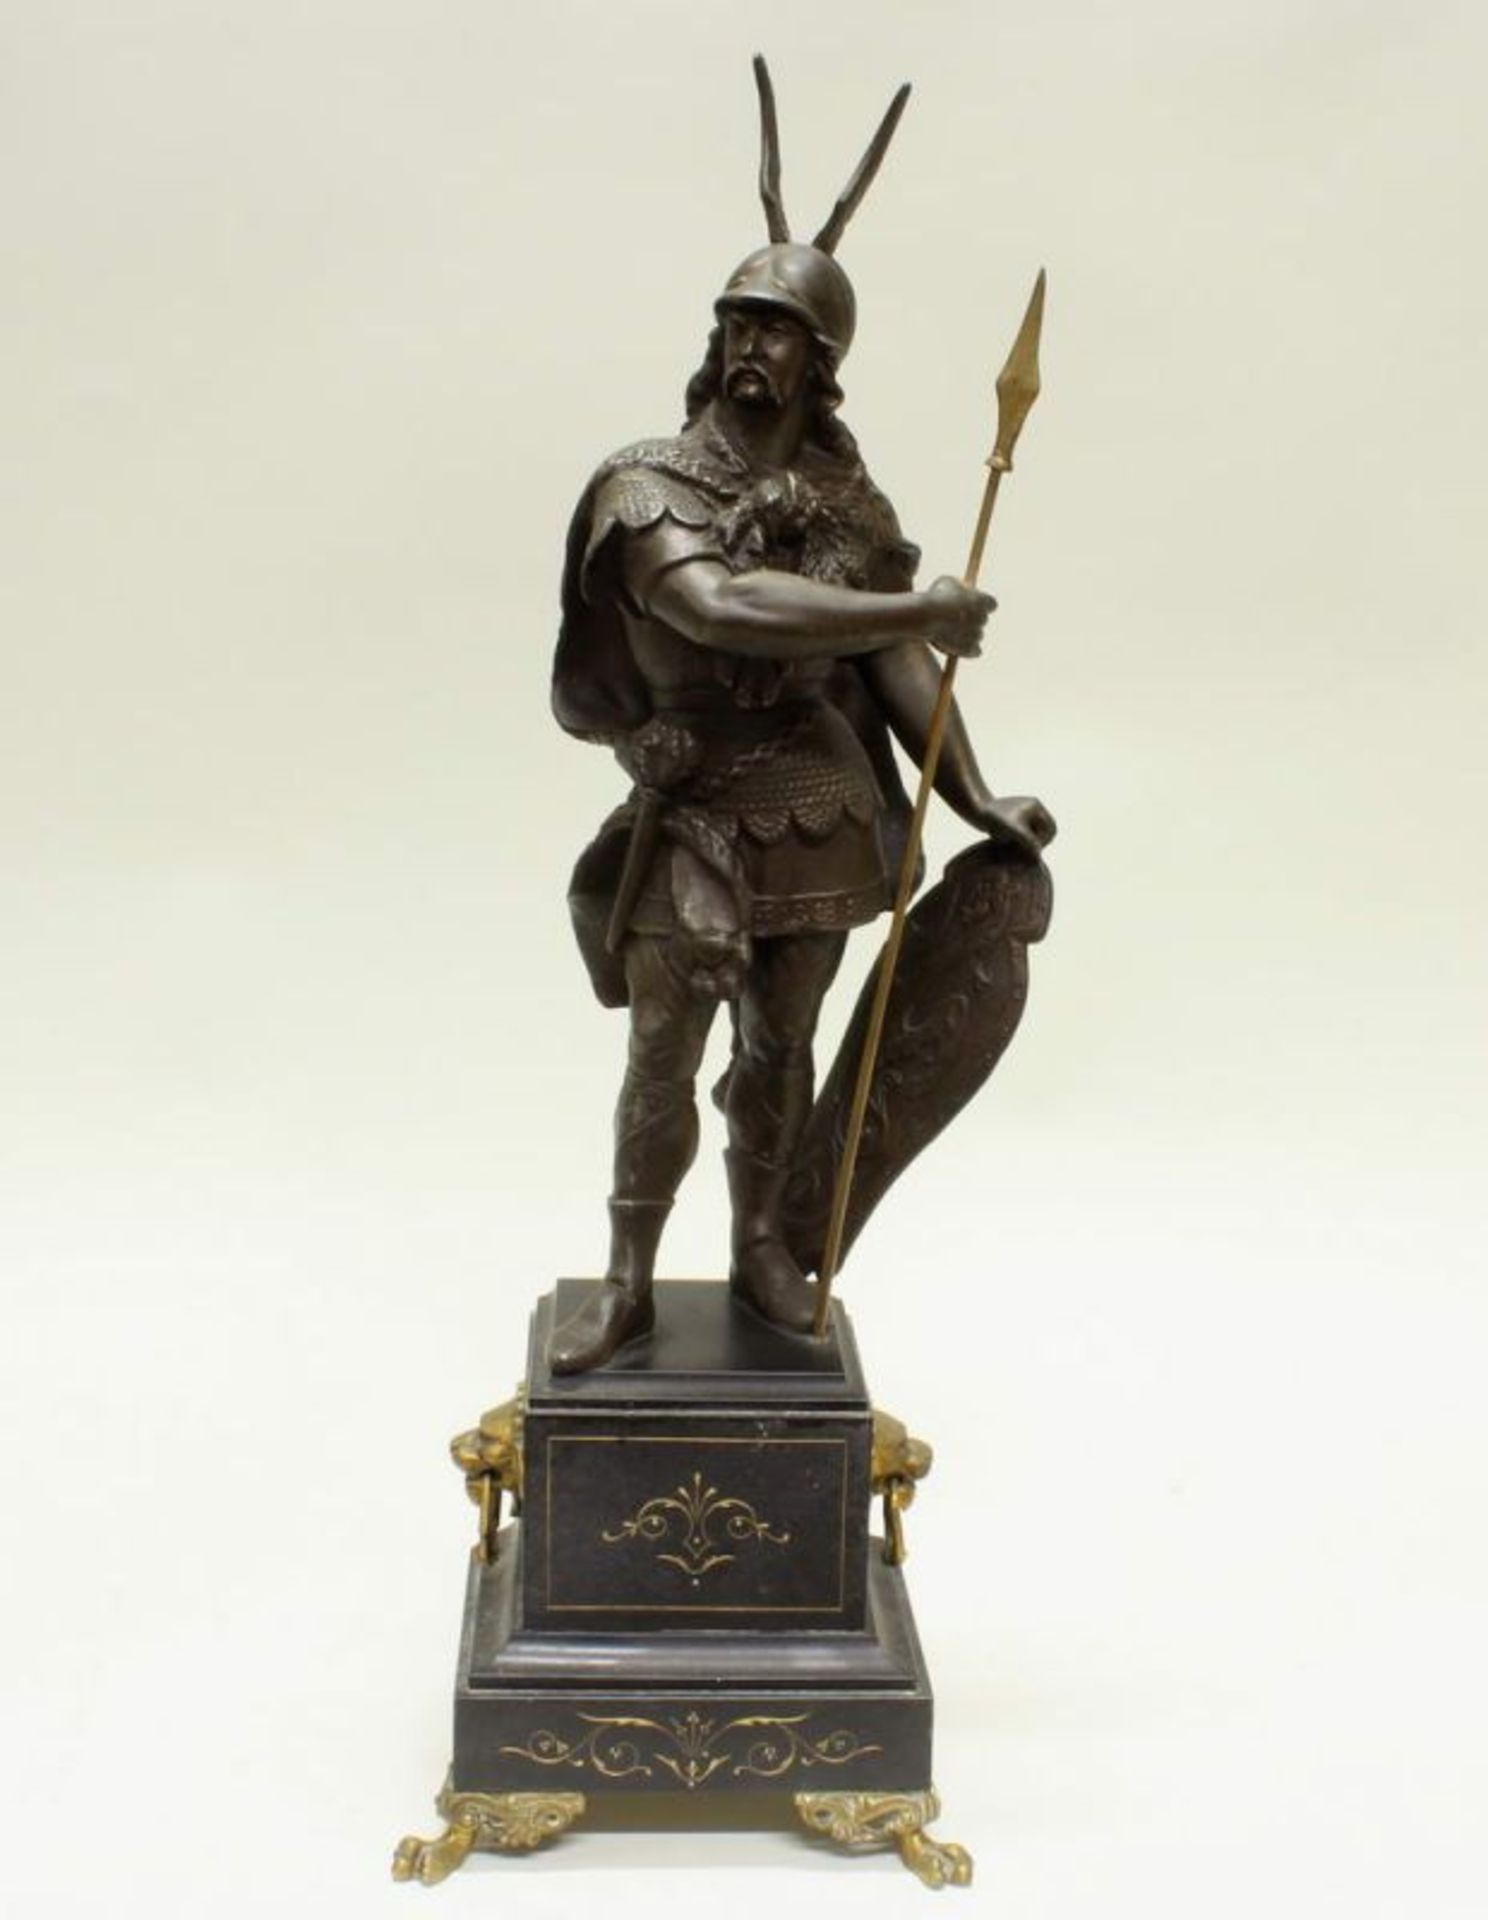 2 Metallgüsse, "Soldat in Rüstung", auf Steinsockel, 34 cm bzw. 50 cm hoch 20.00 % buyer's premium - Image 2 of 5